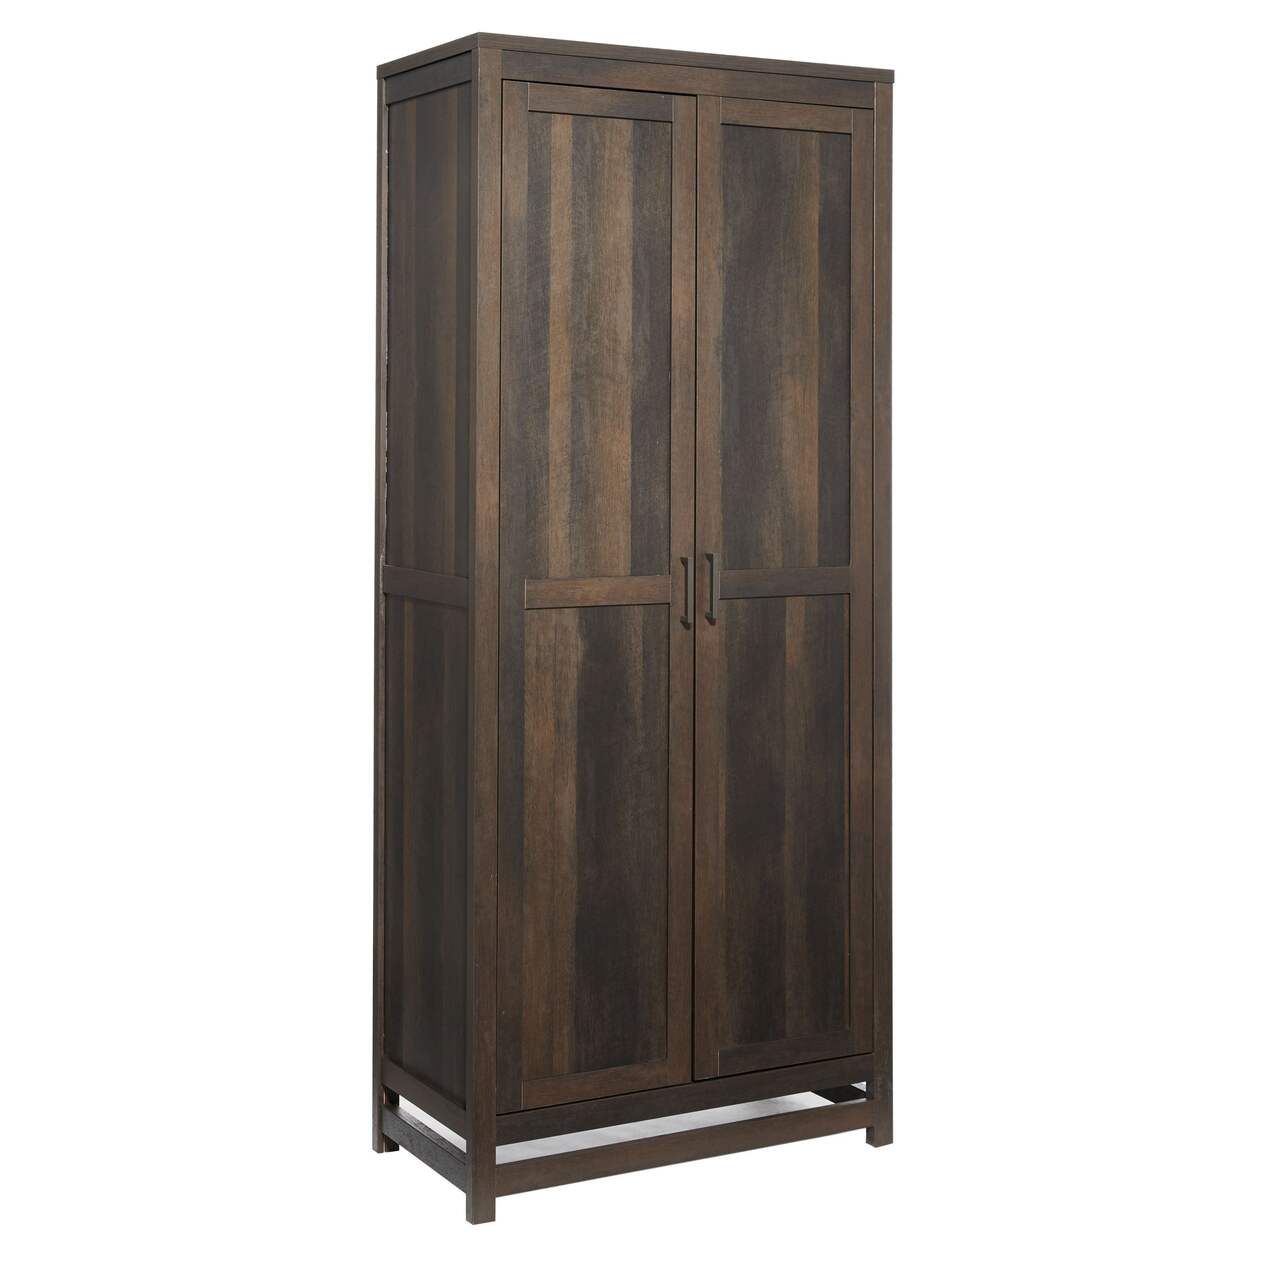 CANVAS Monclerc 2-Door Storage Cabinet/Wardrobe/Armoire, Black